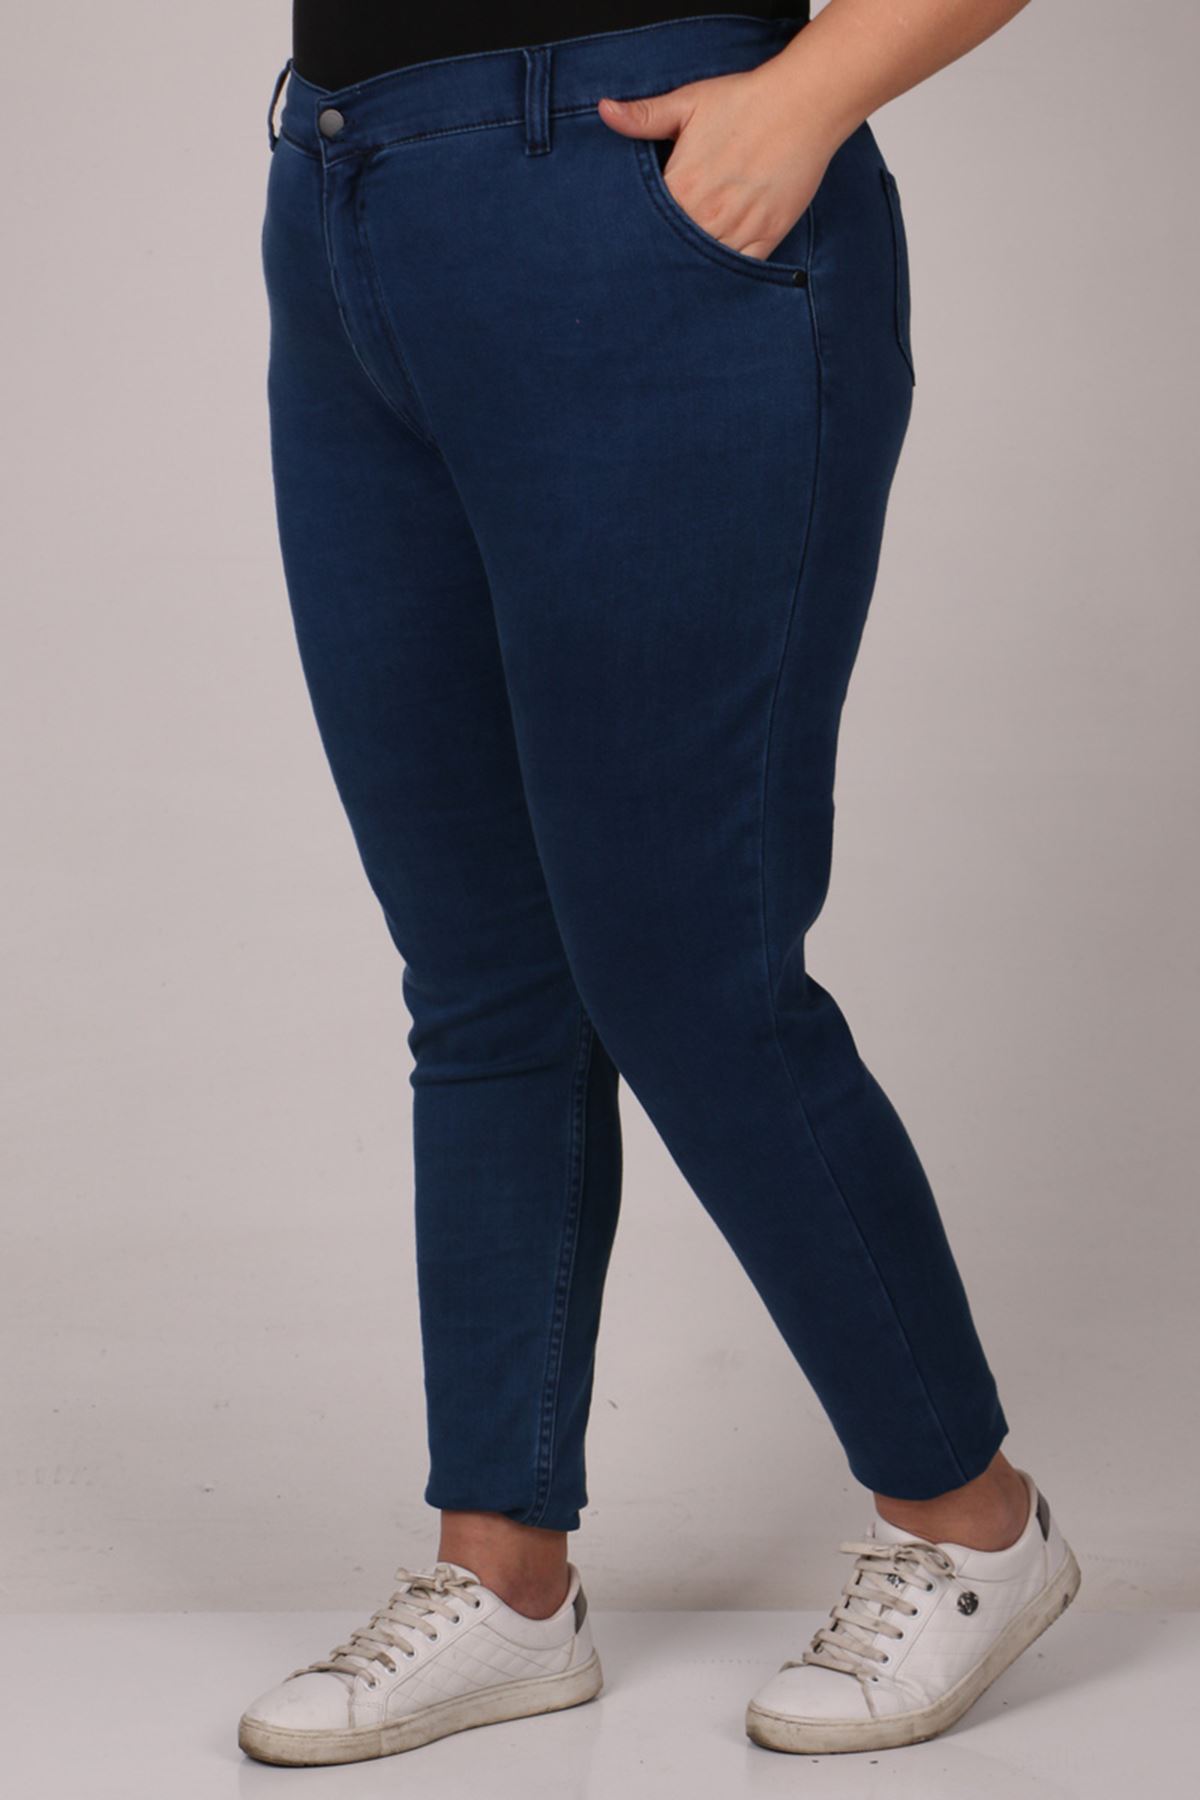 29028 Büyük Beden Beli Lastikli Uzun Boy Dar Paça Kot Pantolon - Koyu Mavi